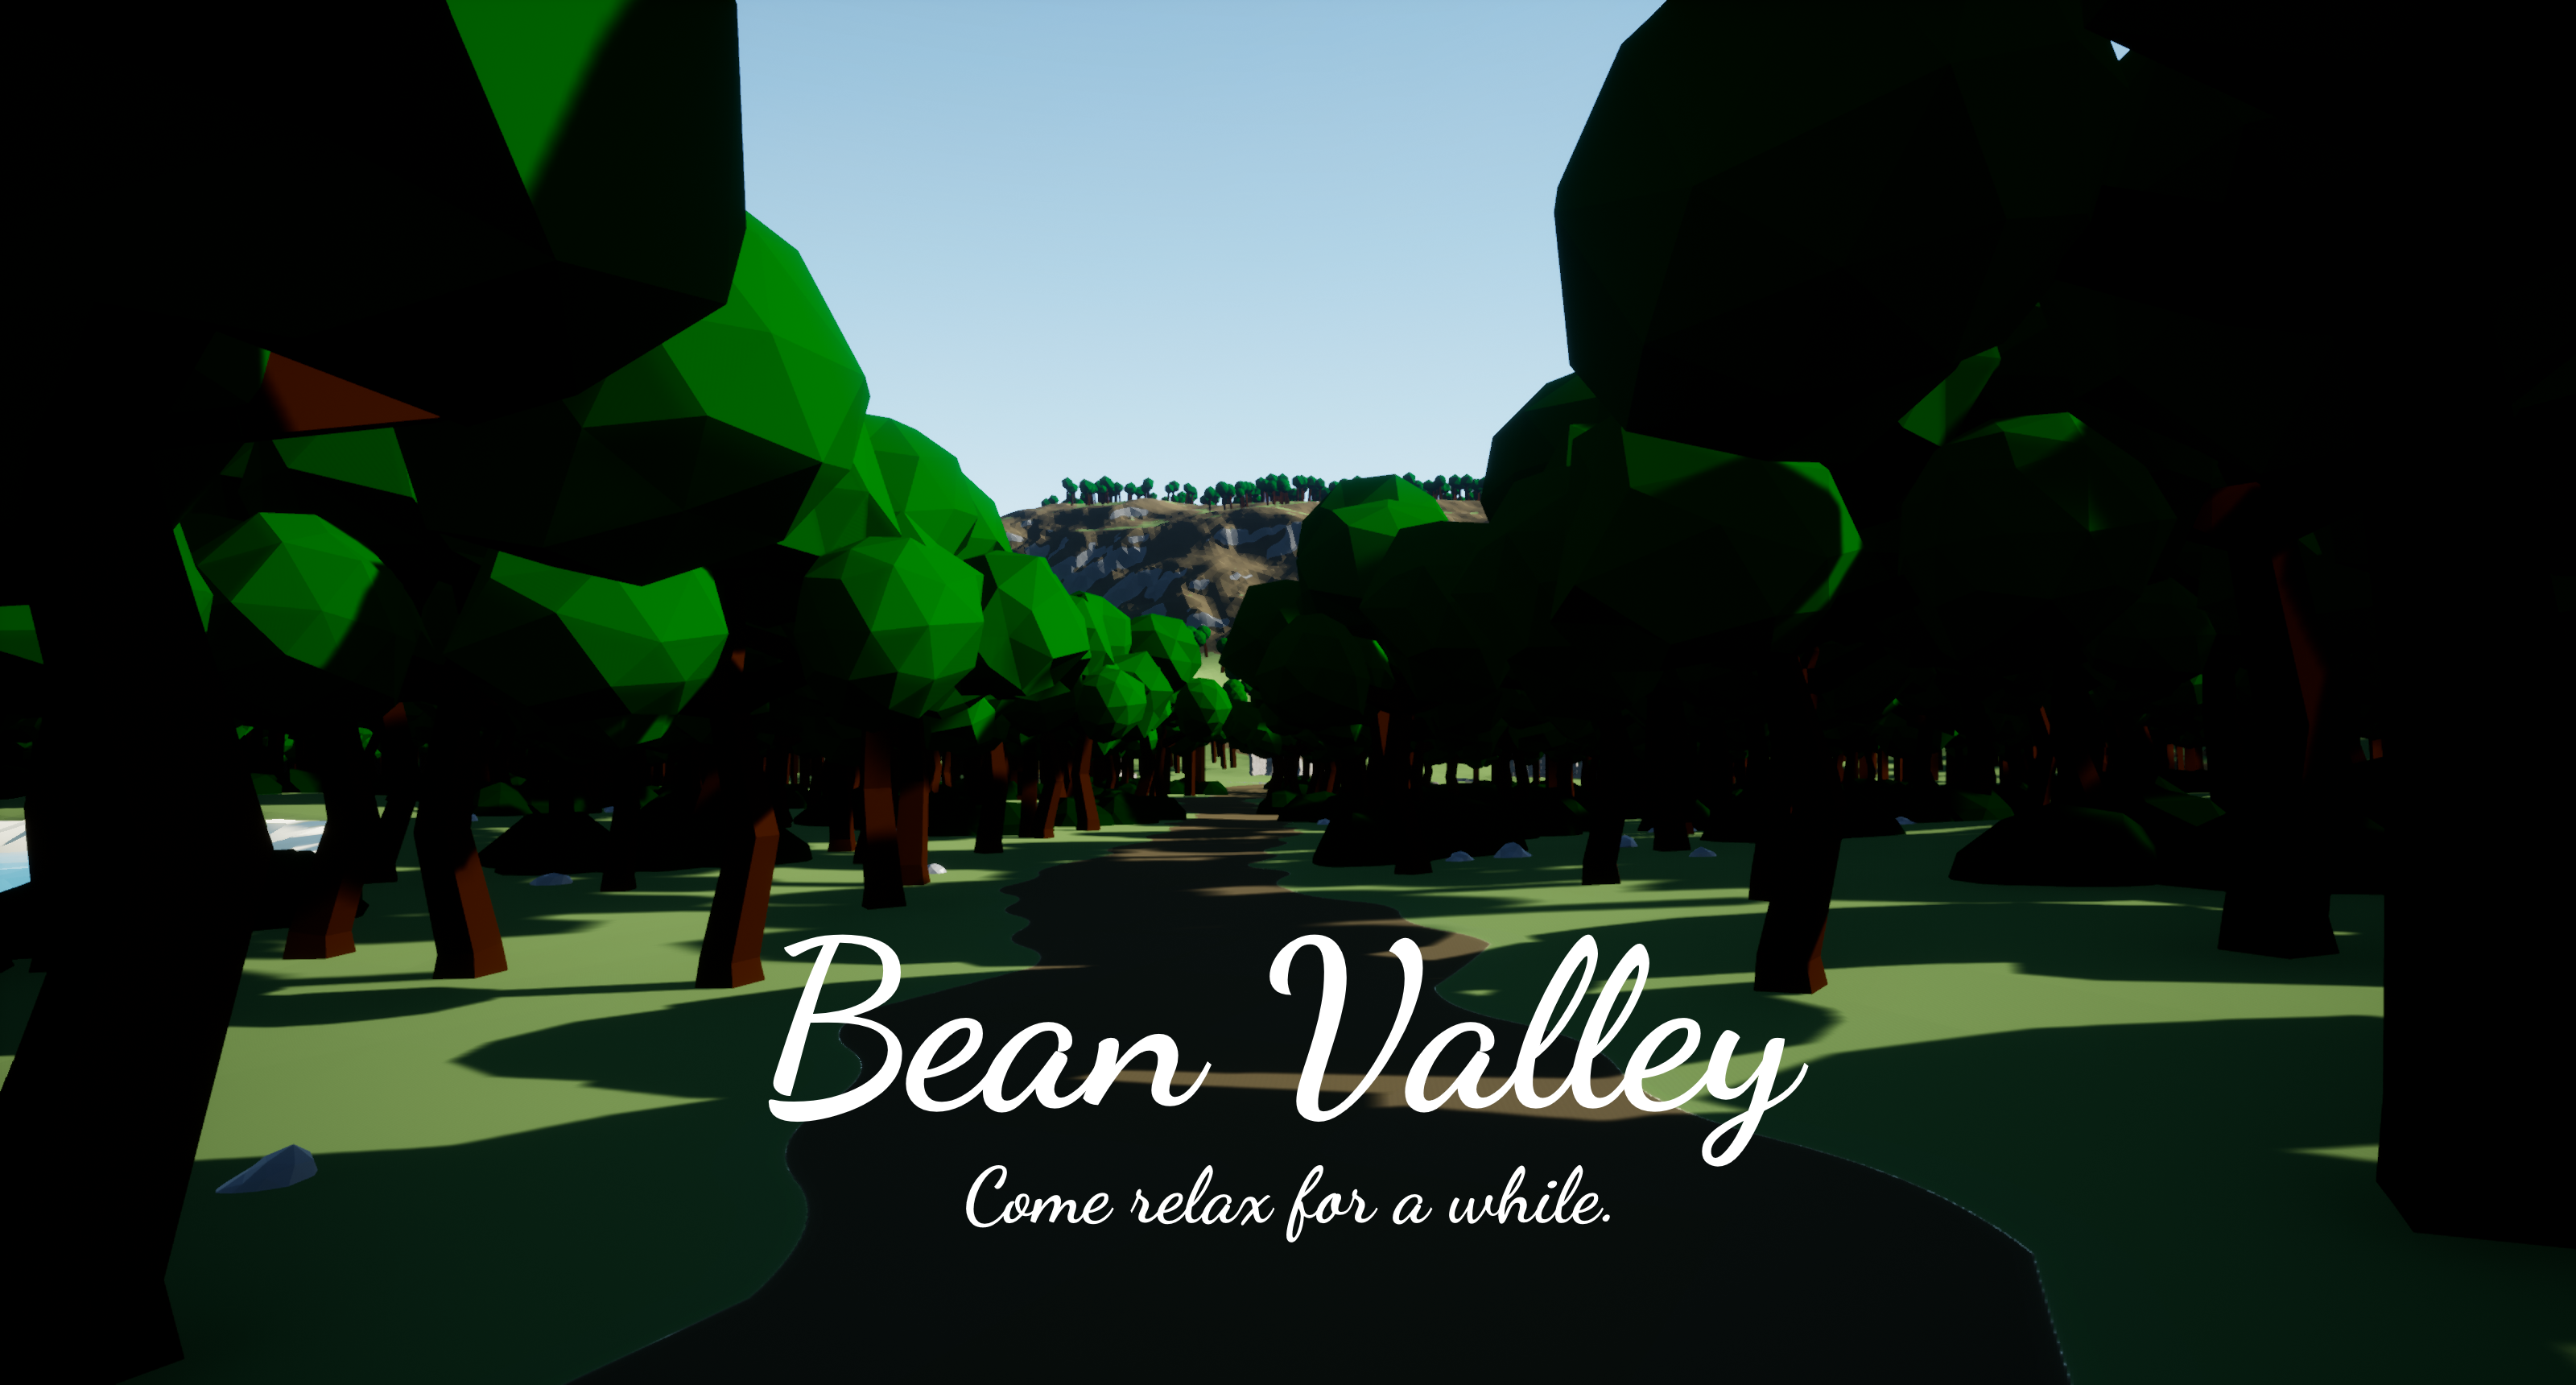 Bean Valley